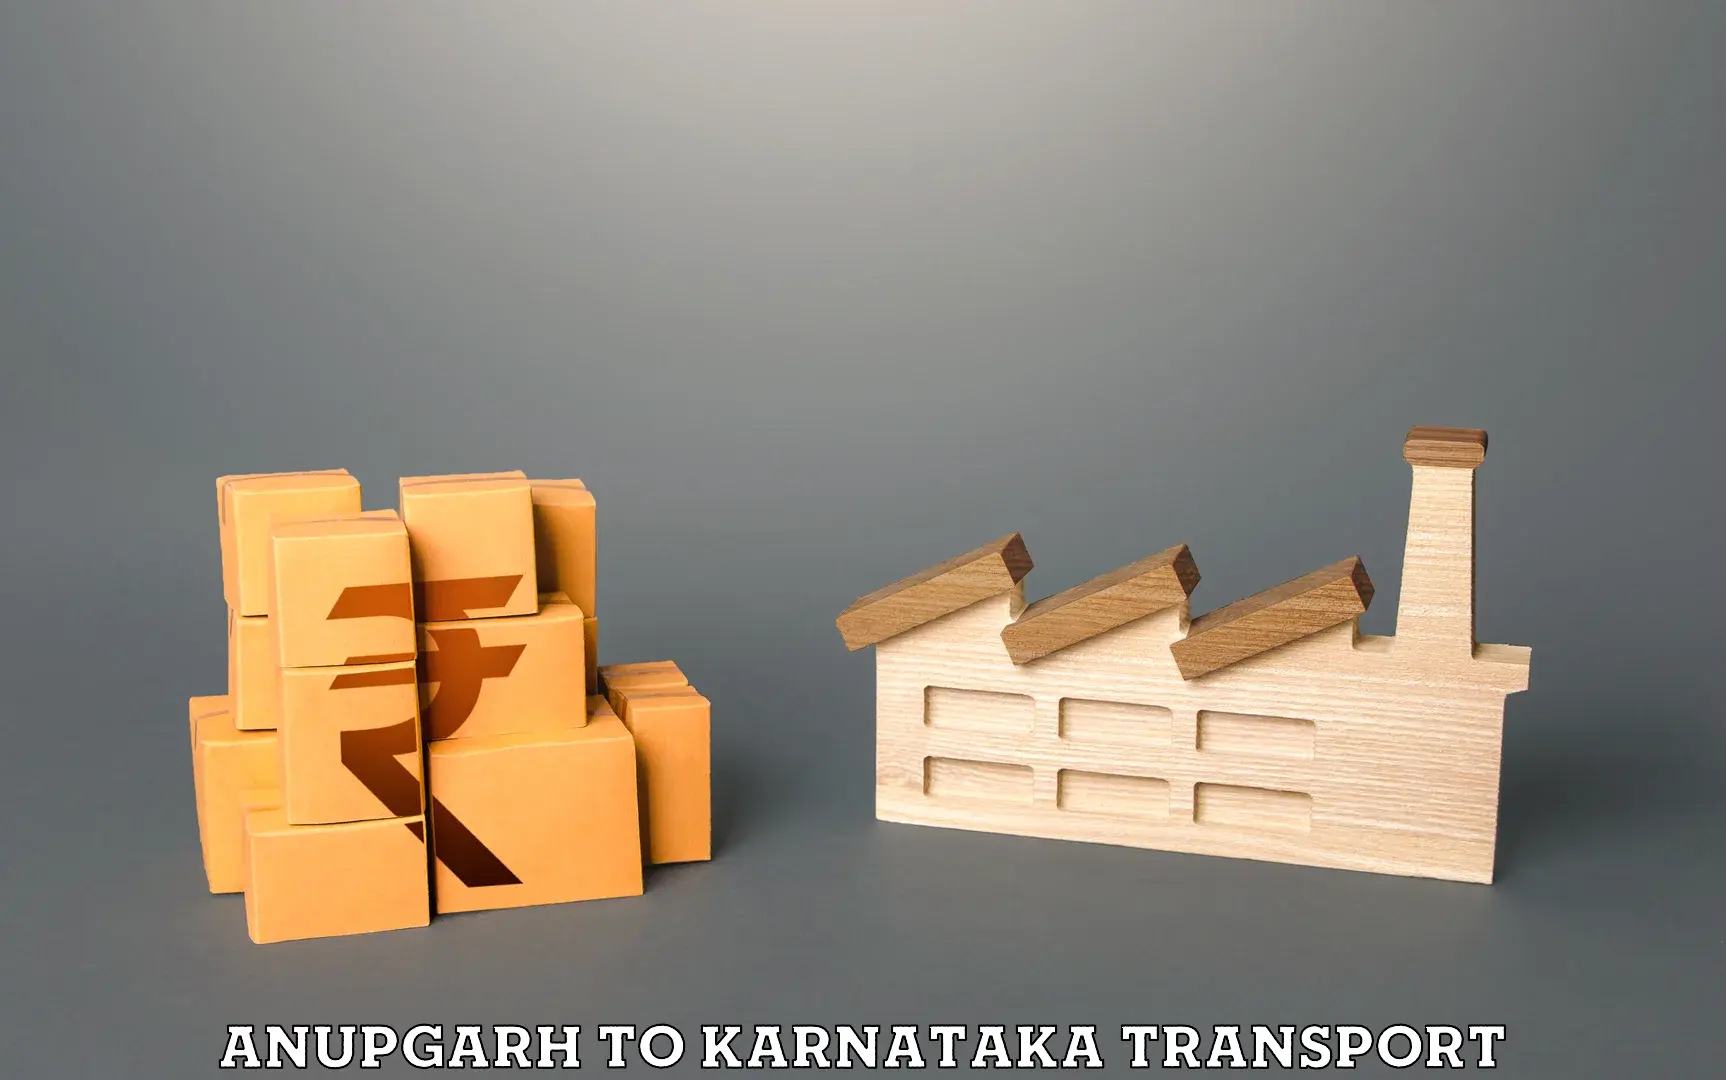 Pick up transport service Anupgarh to Kalaburagi